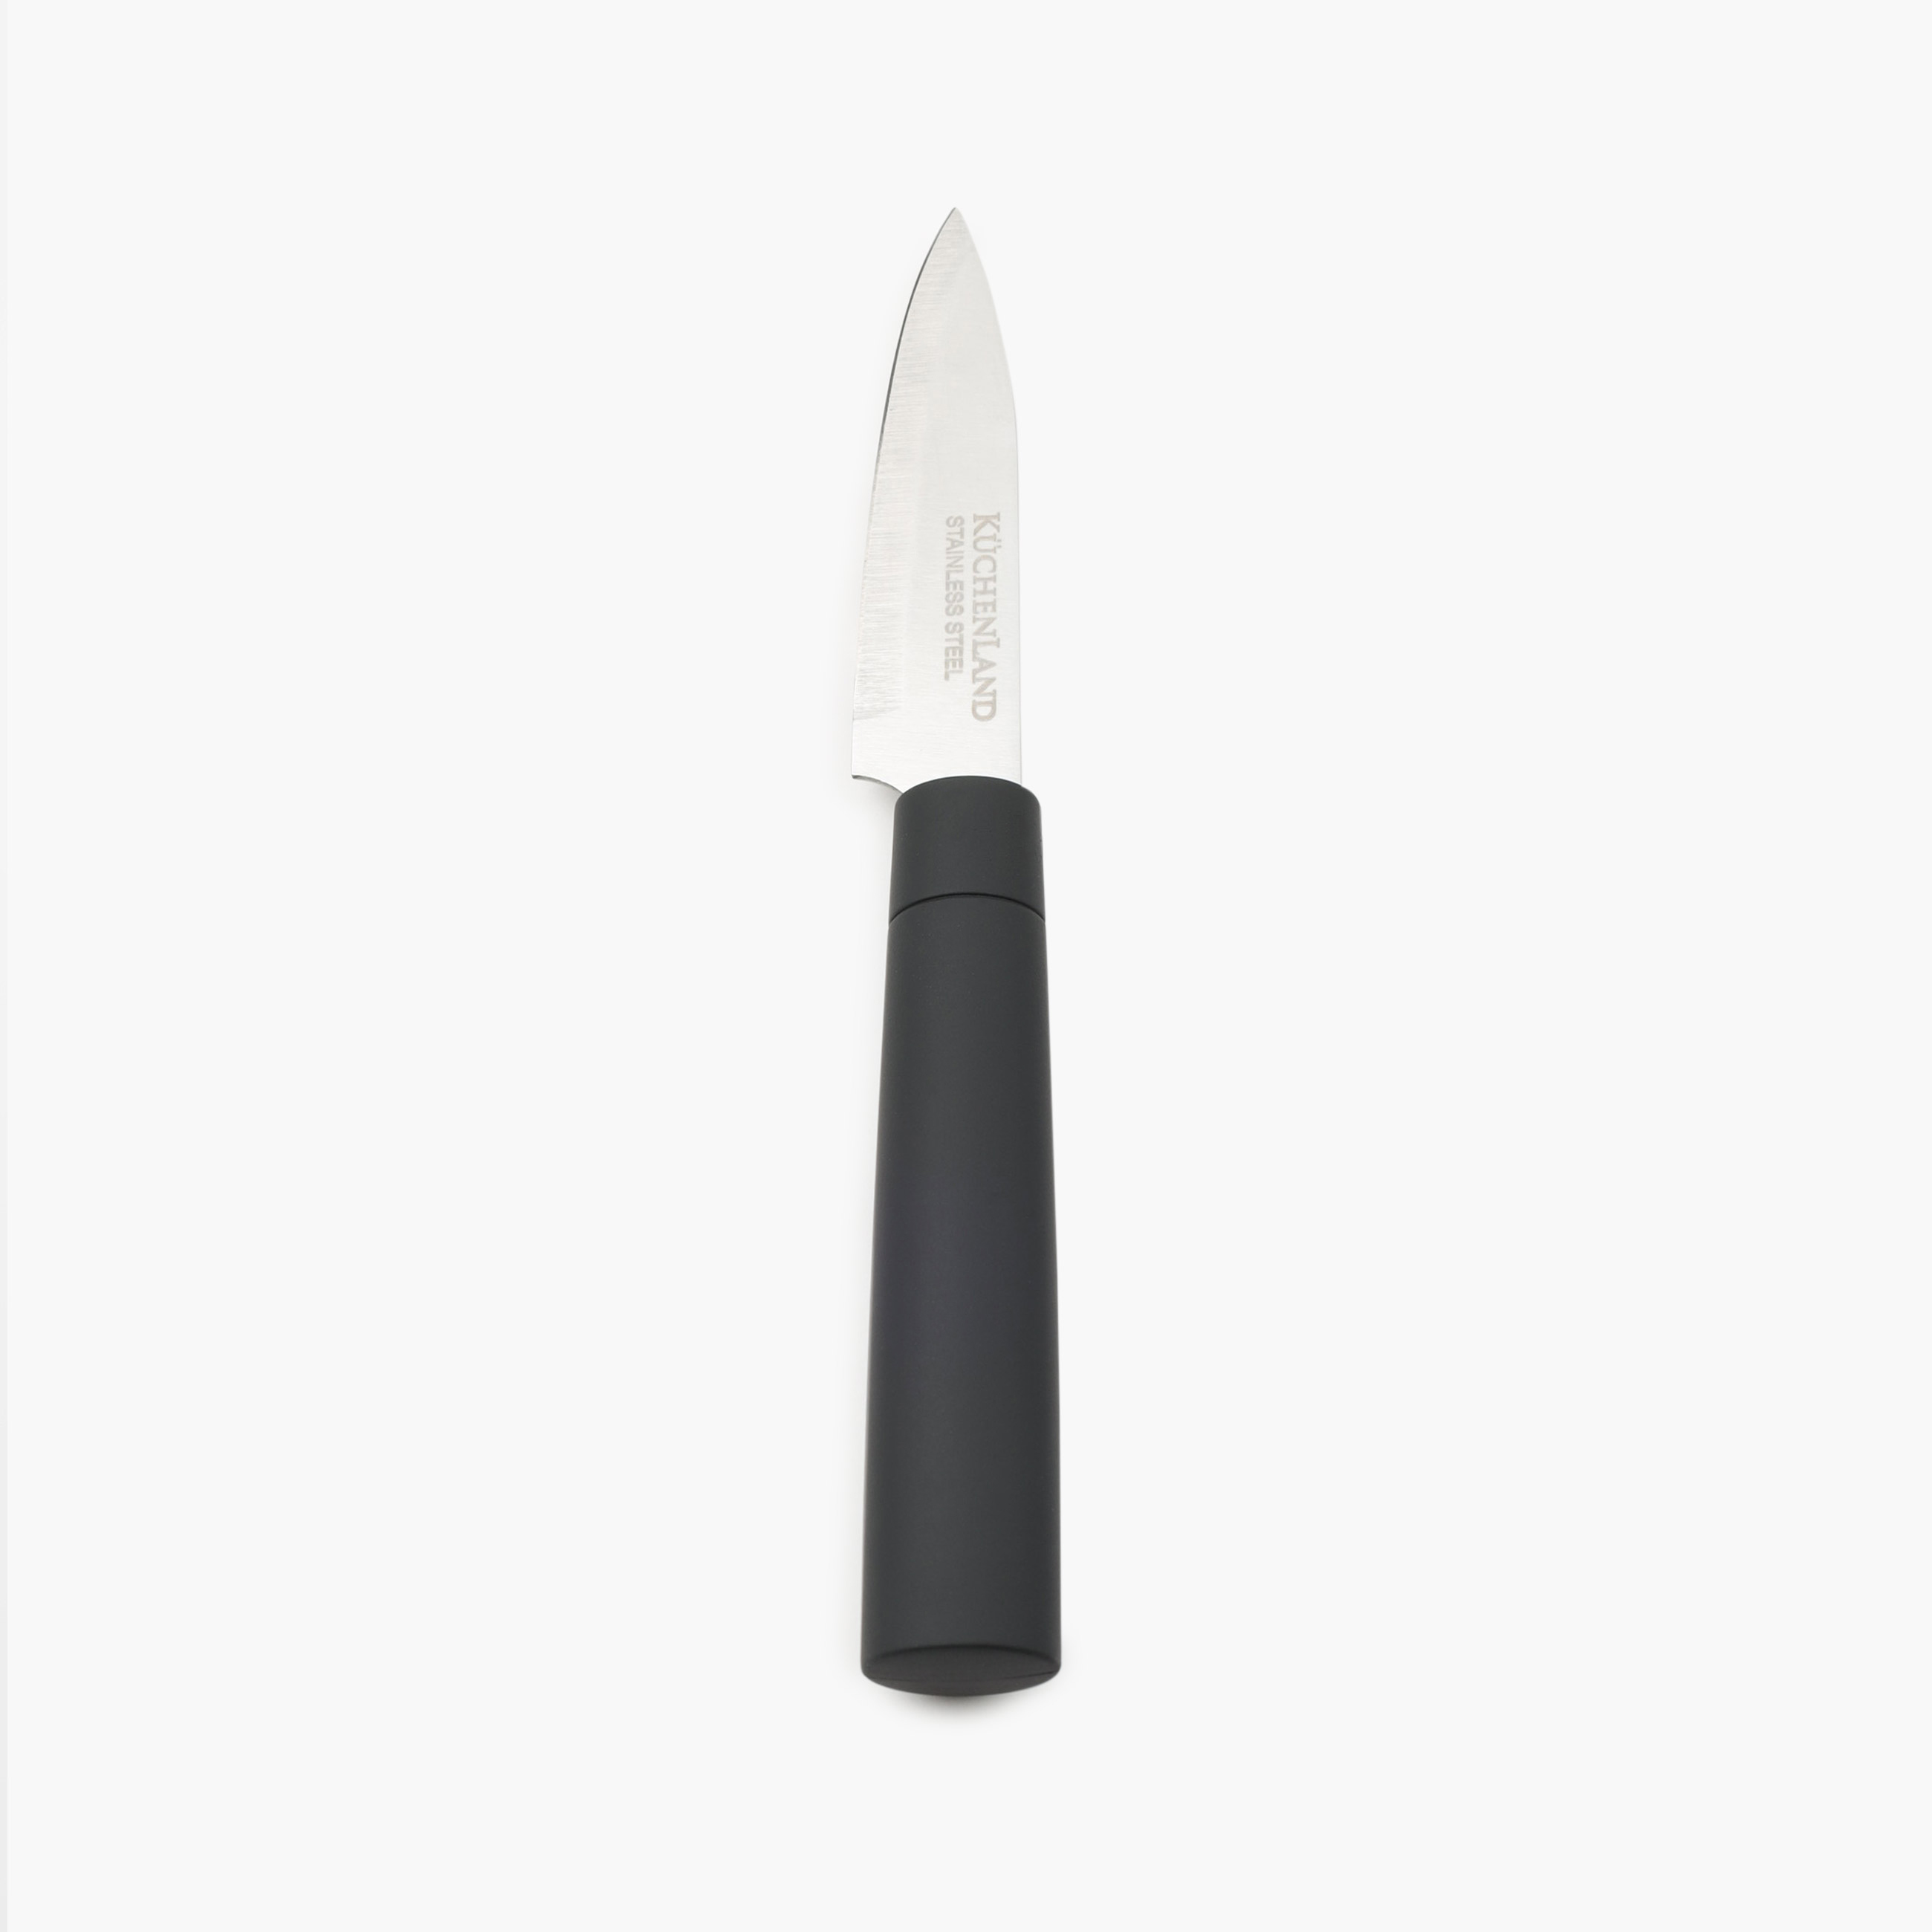 Набор ножей, 5 пр, в подставке, сталь/пластик, черный, Vitality